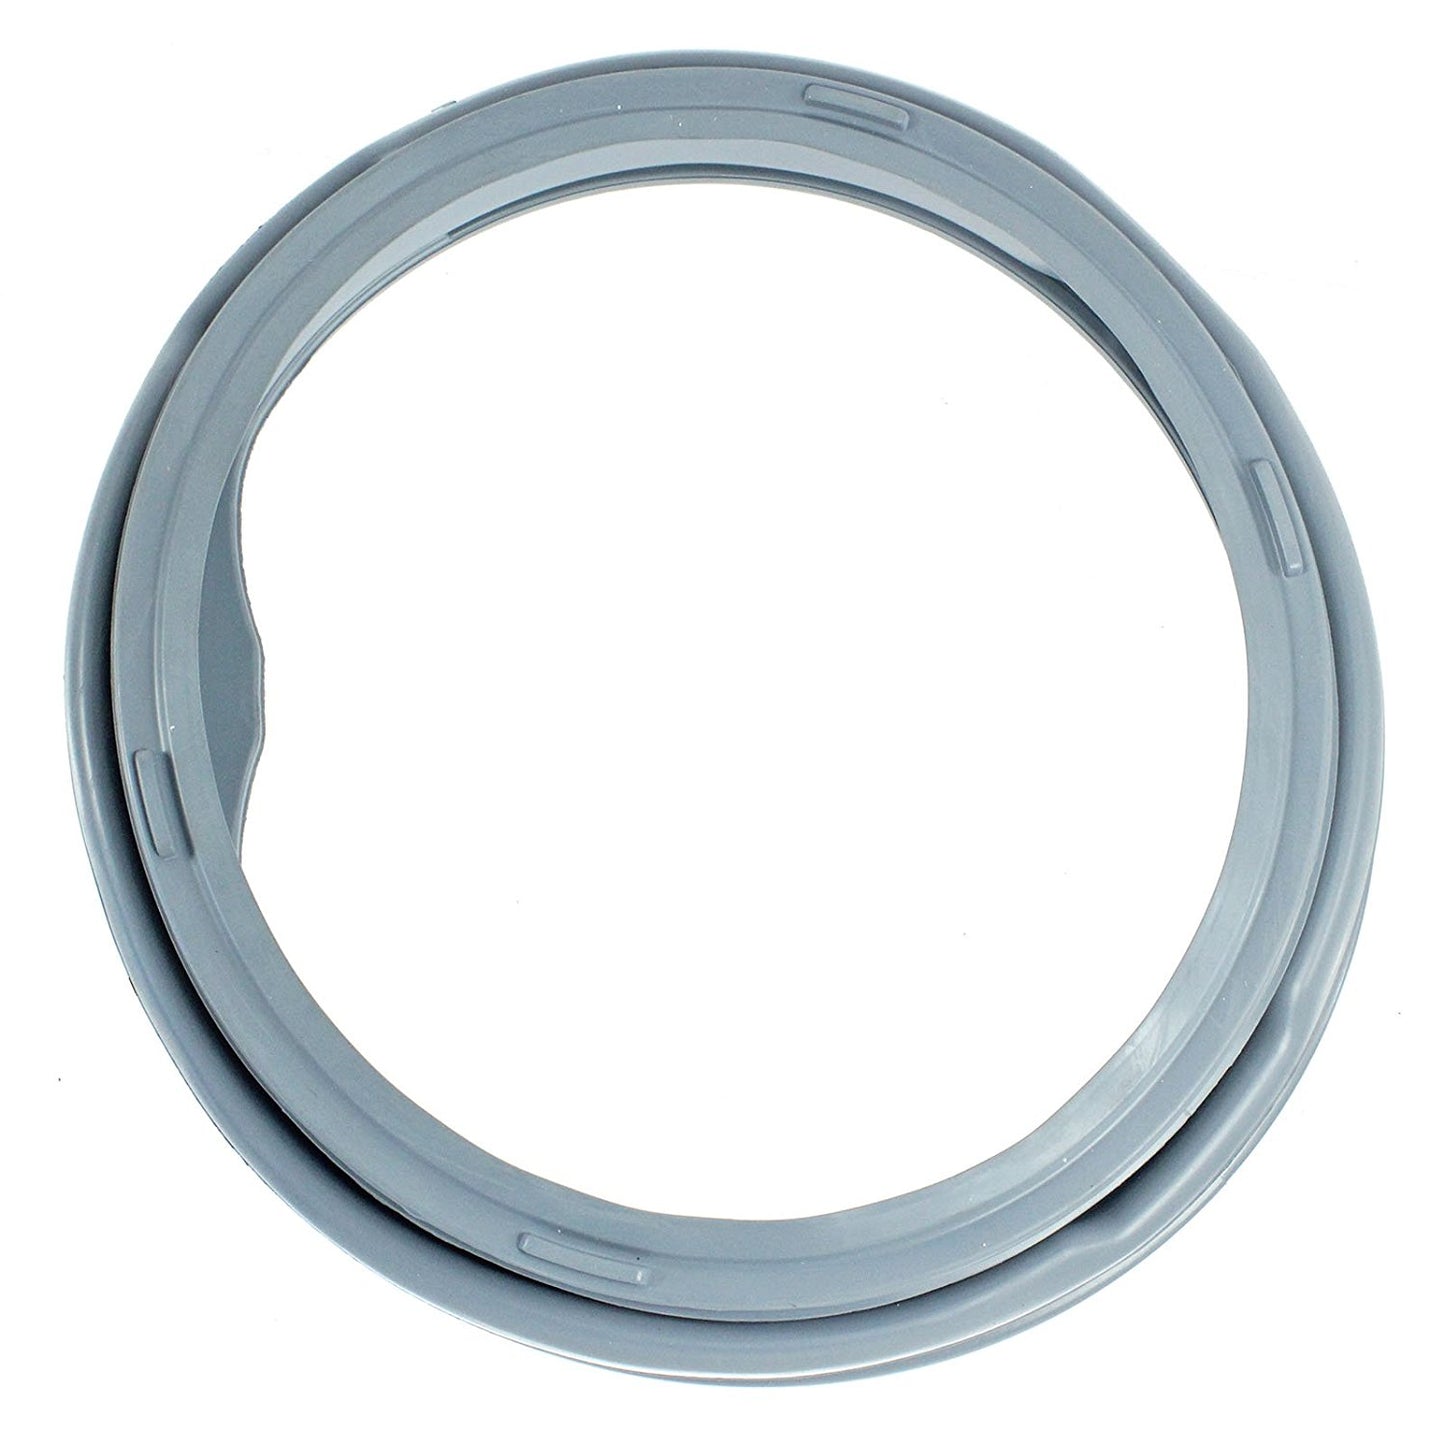 Rubber Window Door Seal Gasket Spare Part for Sharp ESFA7103A1-EN, ESFA7103A1-PL, ESFA7123A1-EN Washing Machine